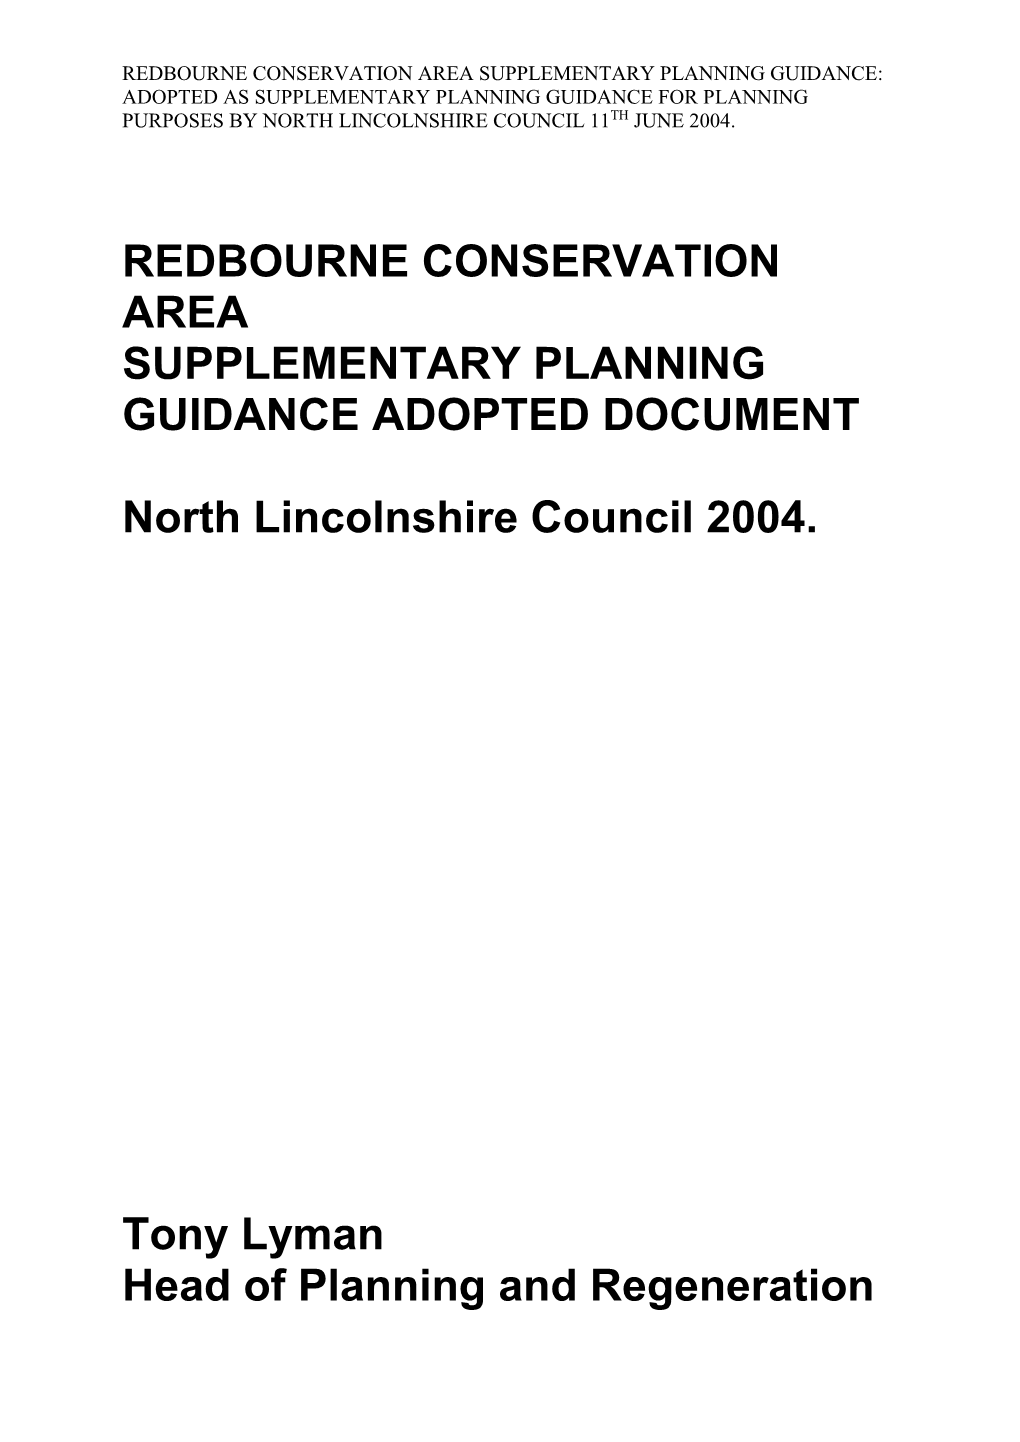 Redbourne Supplementary Planning Guidance